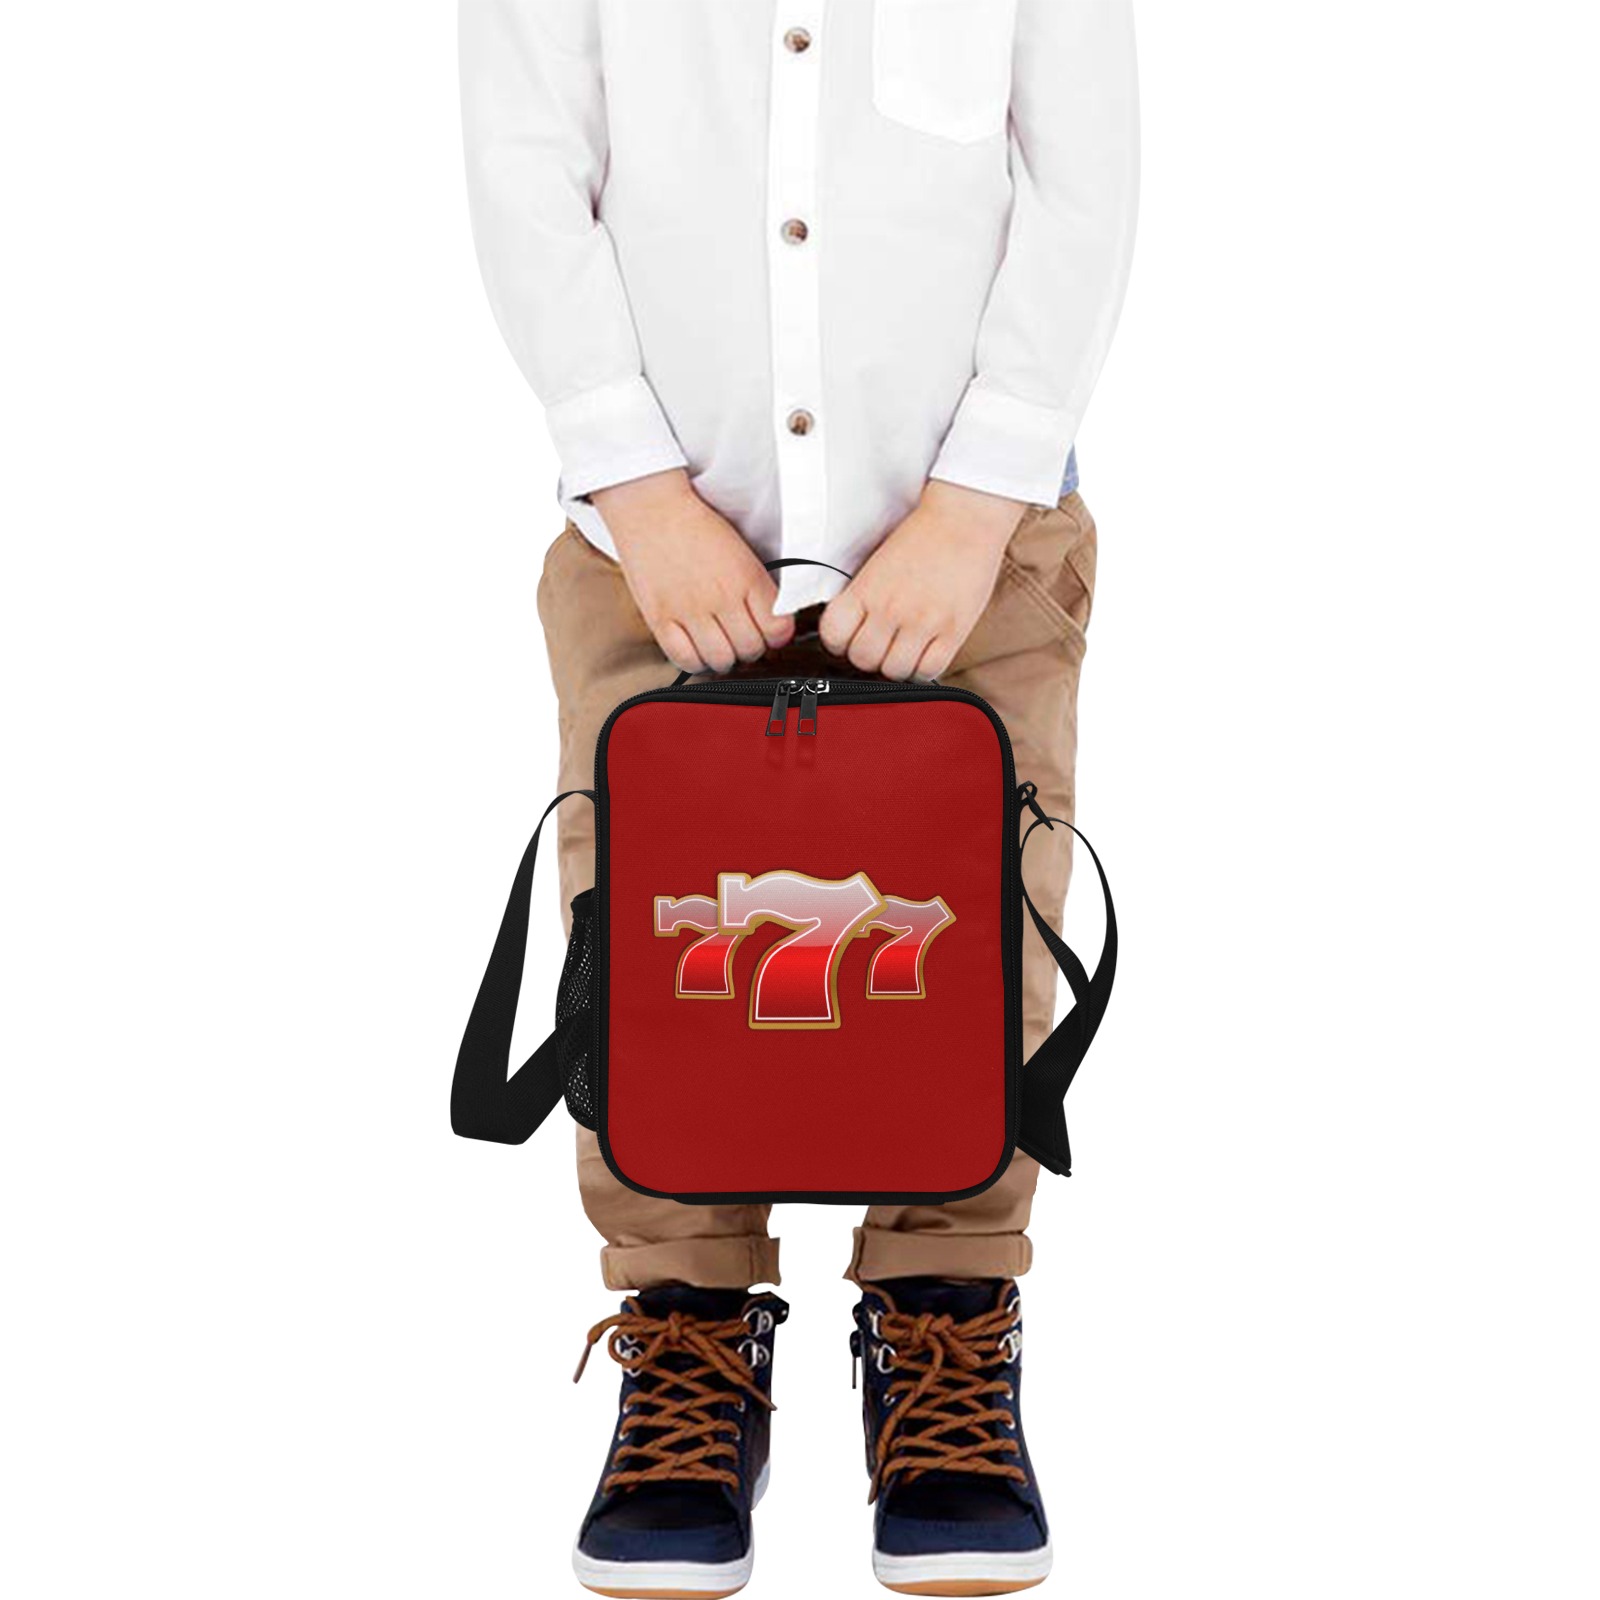 Las Vegas Lucky Sevens 777 / Red Crossbody Lunch Bag for Kids (Model 1722)